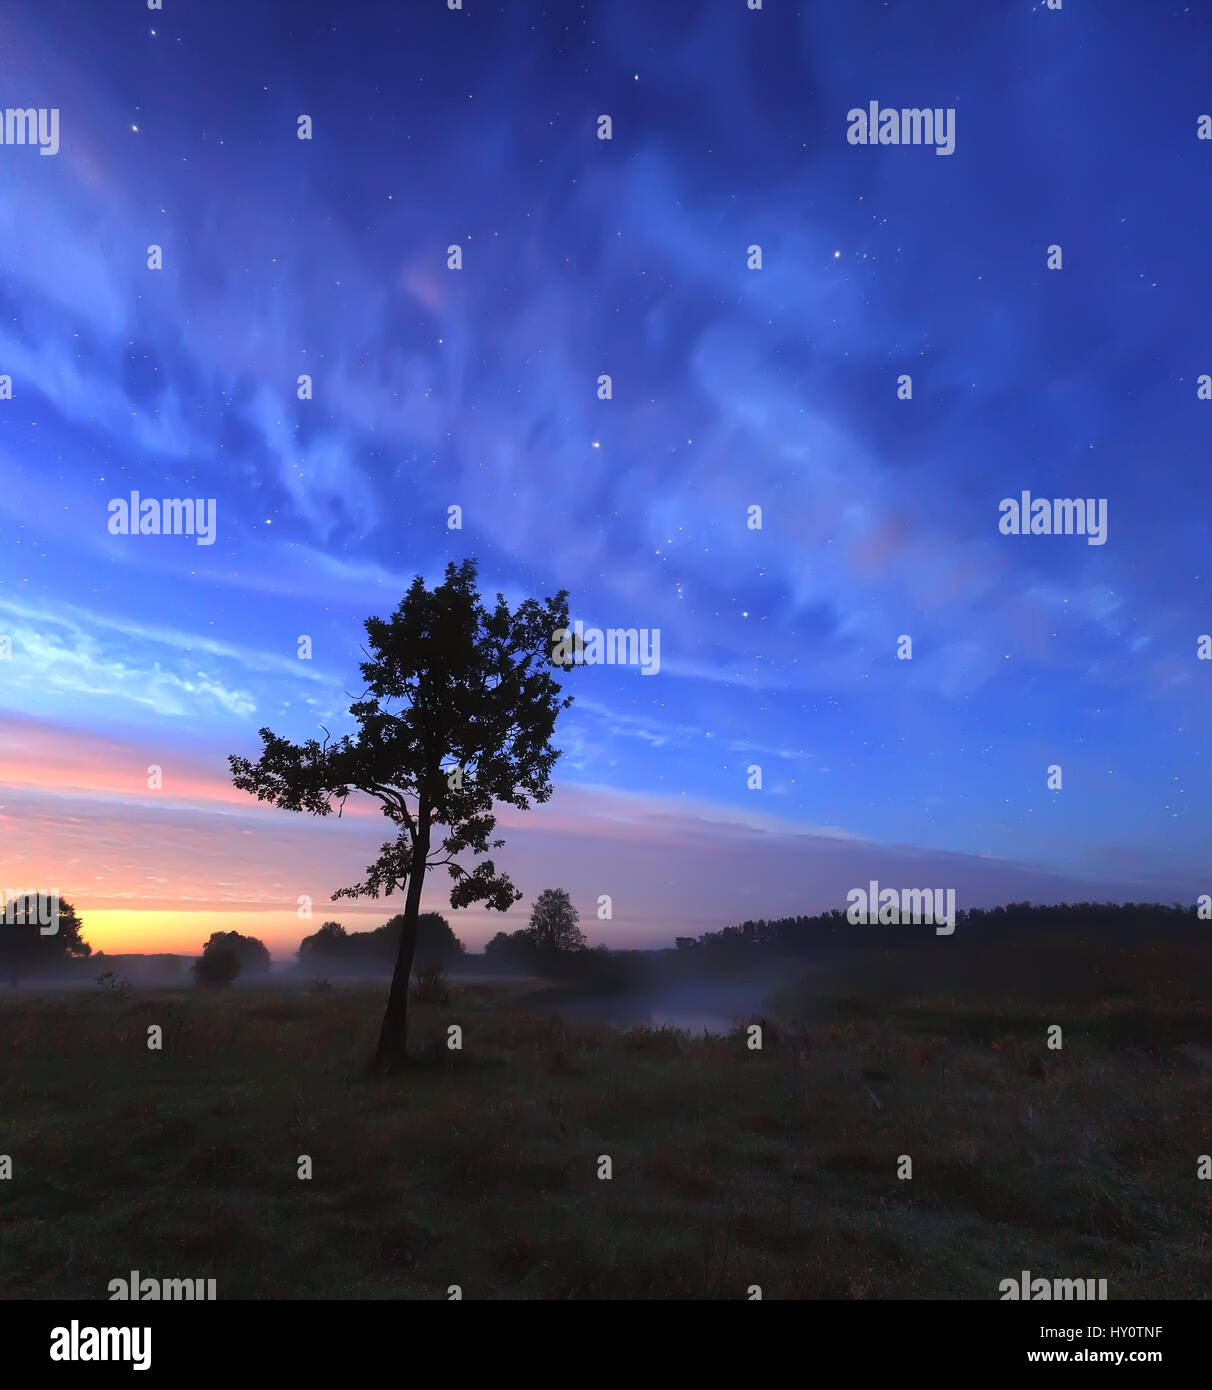 Blu cielo stellato sulle misty meadow al crepuscolo. Bella scena notturna con le stelle e le nuvole in cielo. Sun inizia a illuminare orizzonte dal colore rosso. Colorfu Foto Stock